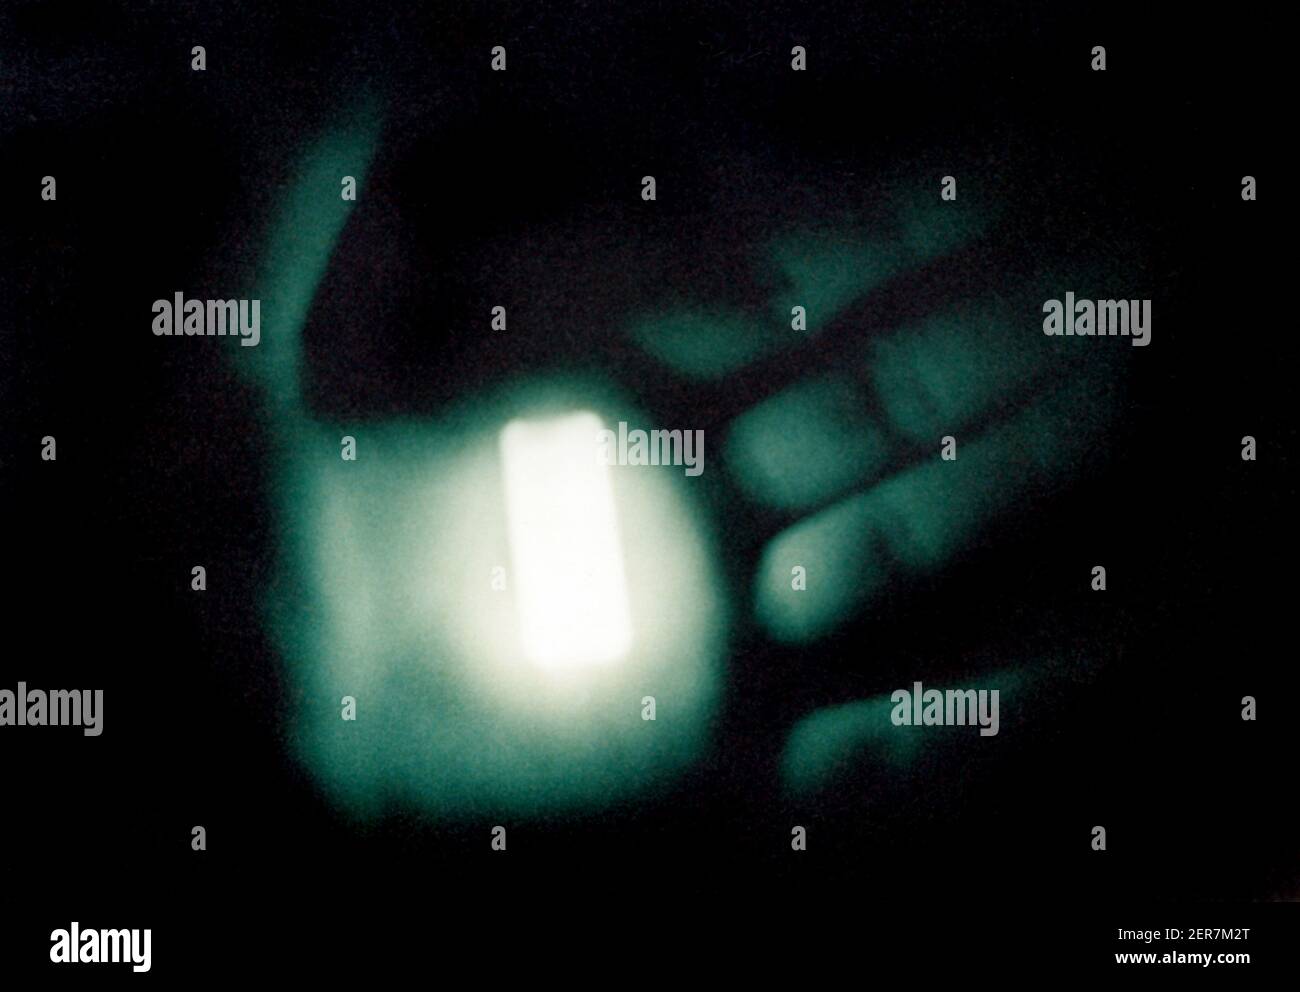 Fosforescencia, 1986. Un pedazo de plástico fosforescente en la oscuridad, unos segundos después de haber sido excitado por una pistola de flash. Foto de stock